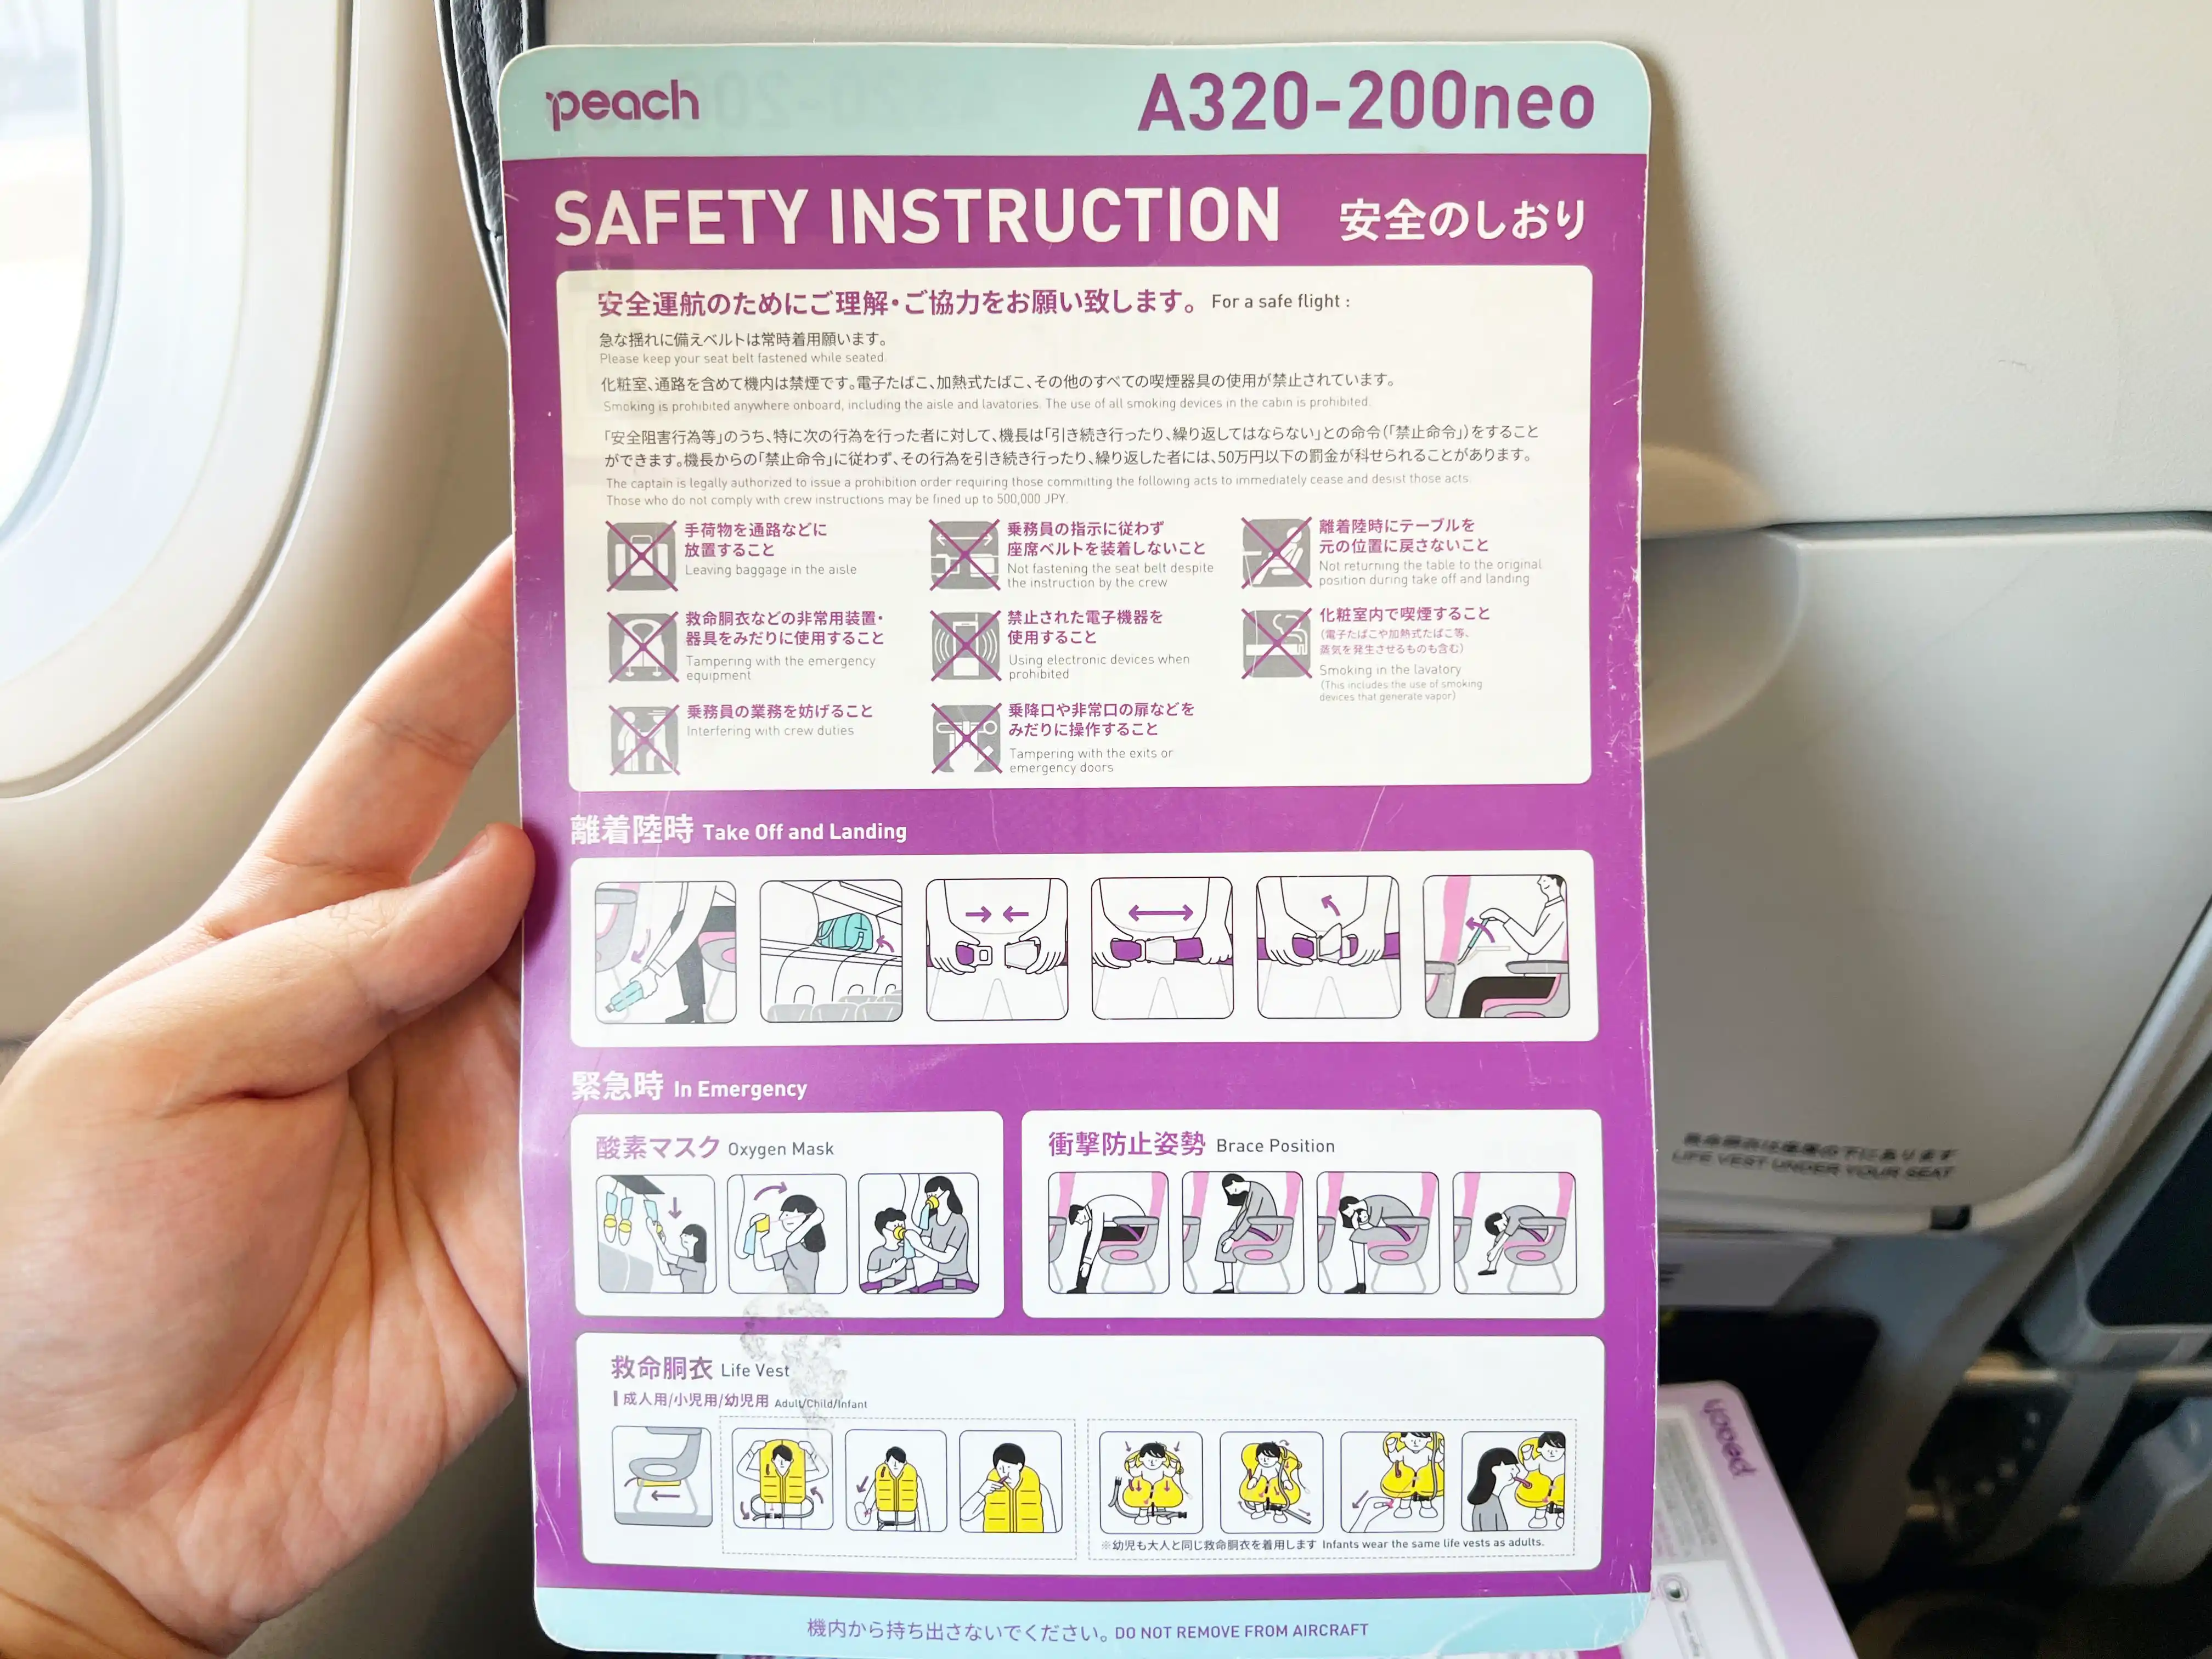 樂桃航空飛機座椅口袋內的安全手冊正面。